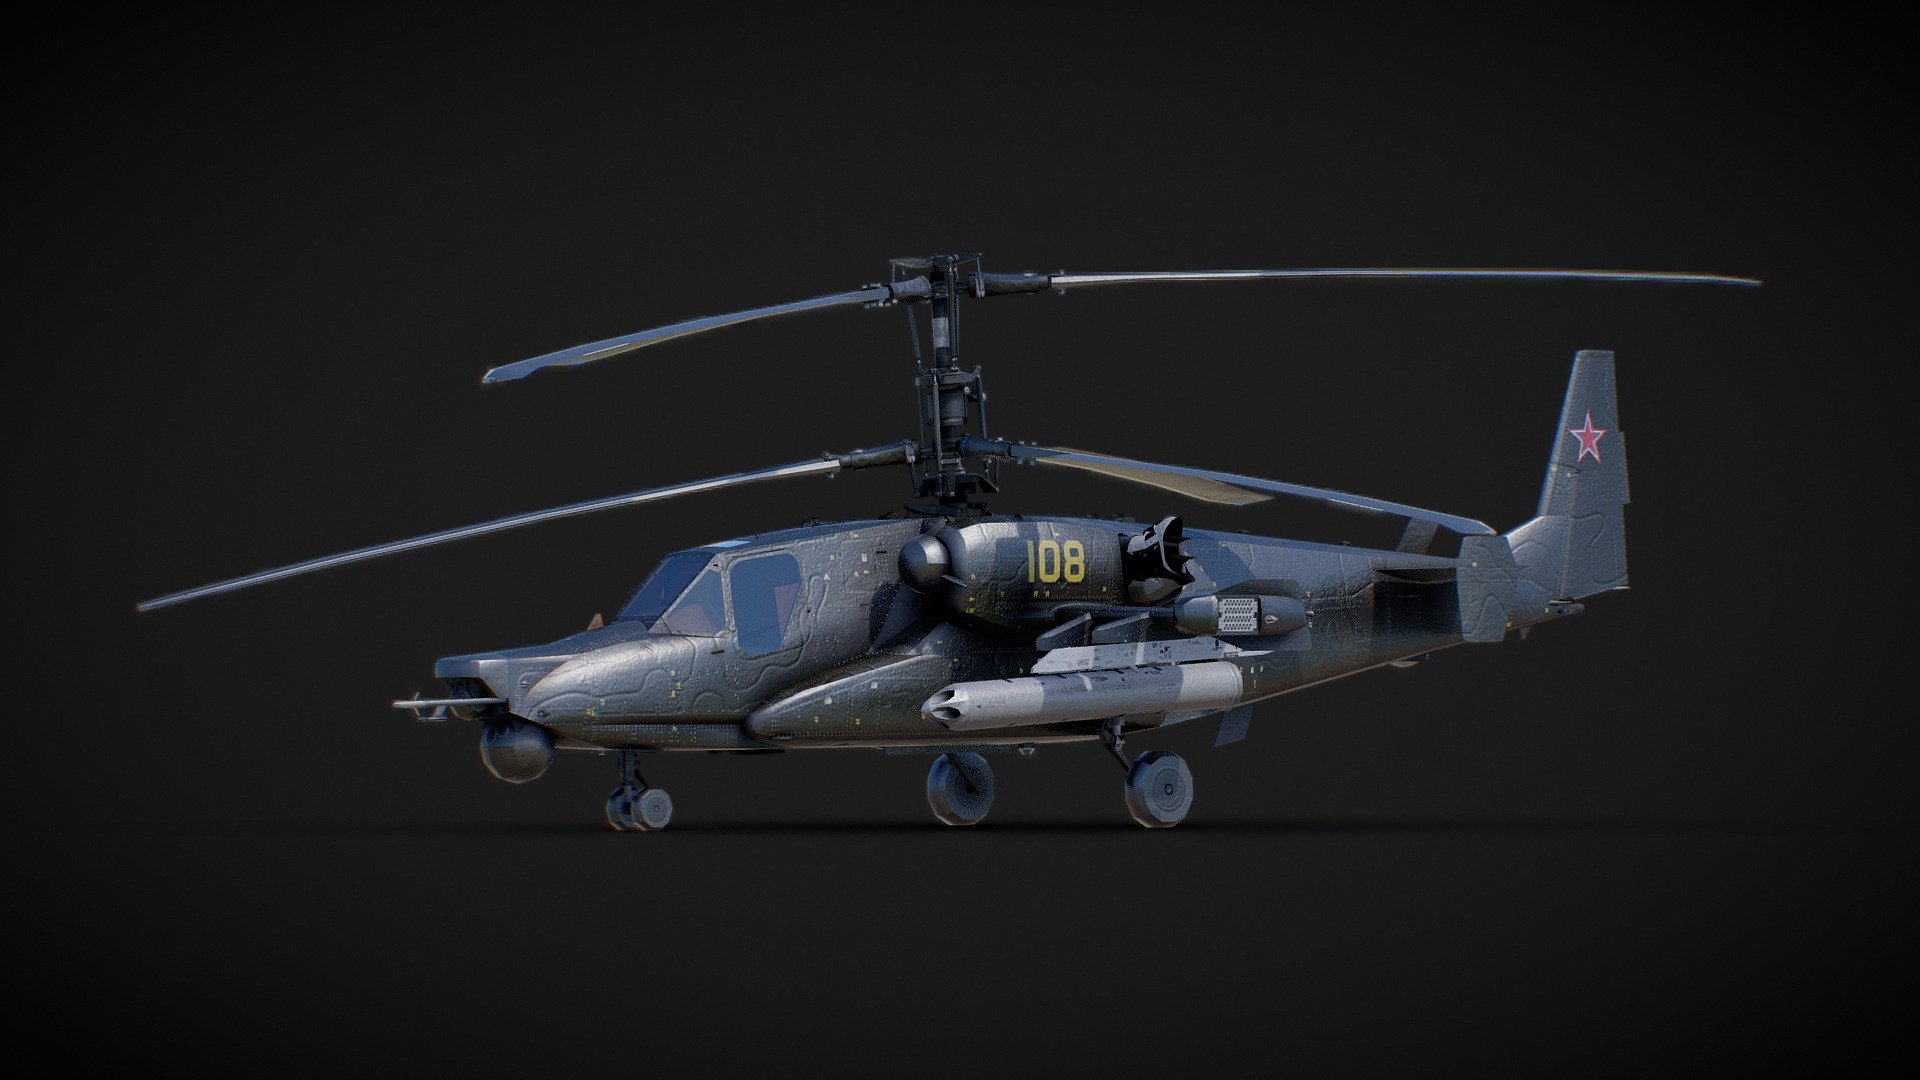 Principal Helicoptero de combate ruso

para informacion de derechos de uso contactar a gabriel@spectrumstudio.cl - KA-50 - 3D model by valde 3d model